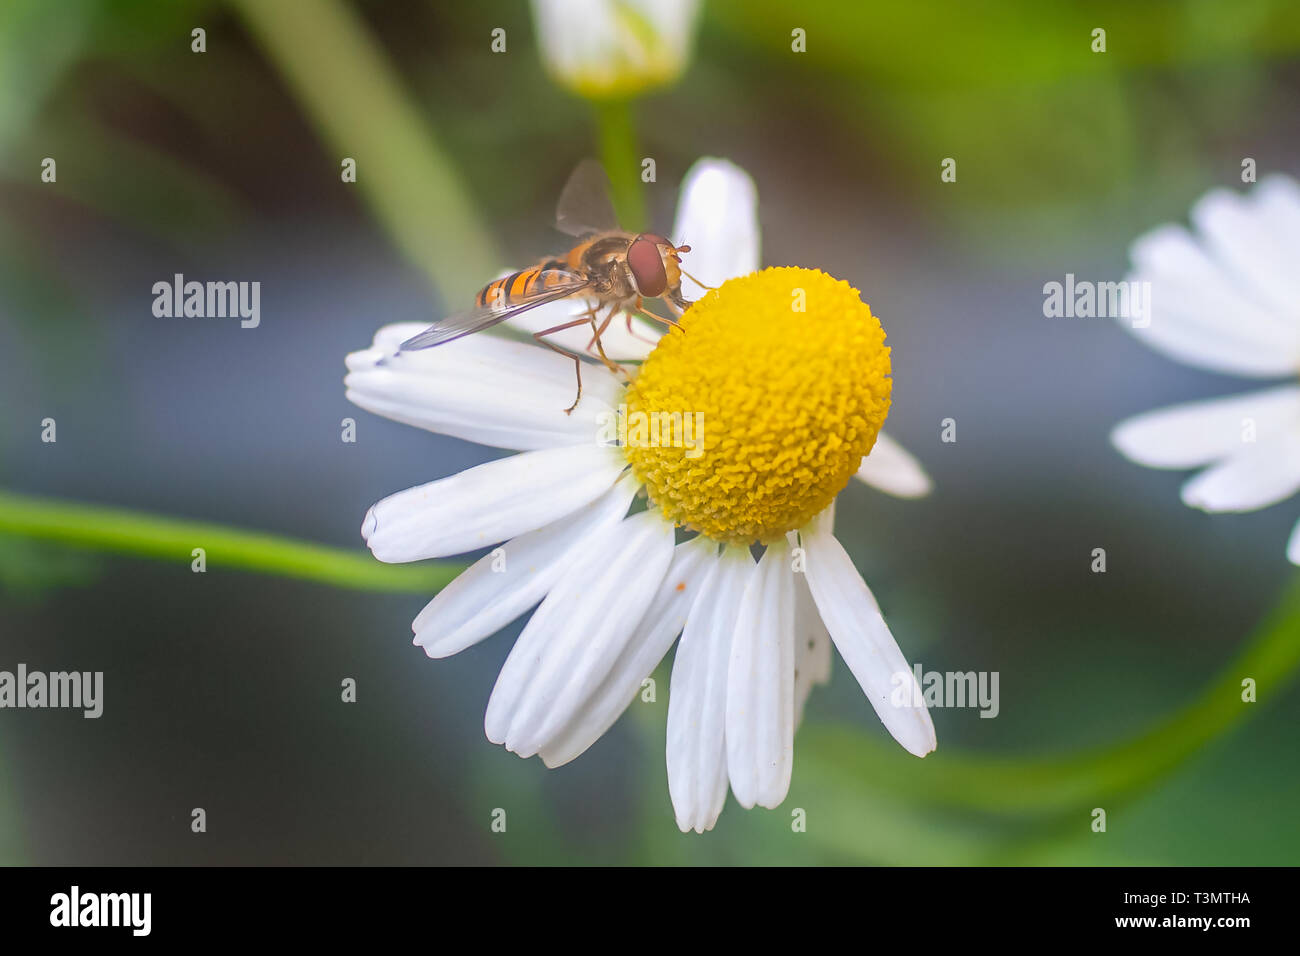 Una vespa (European hornet Vespa crabro) visitando un fiore di camomilla (Anthemis cotula) impianto. Fotografato in Israele in primavera nel mese di aprile Foto Stock